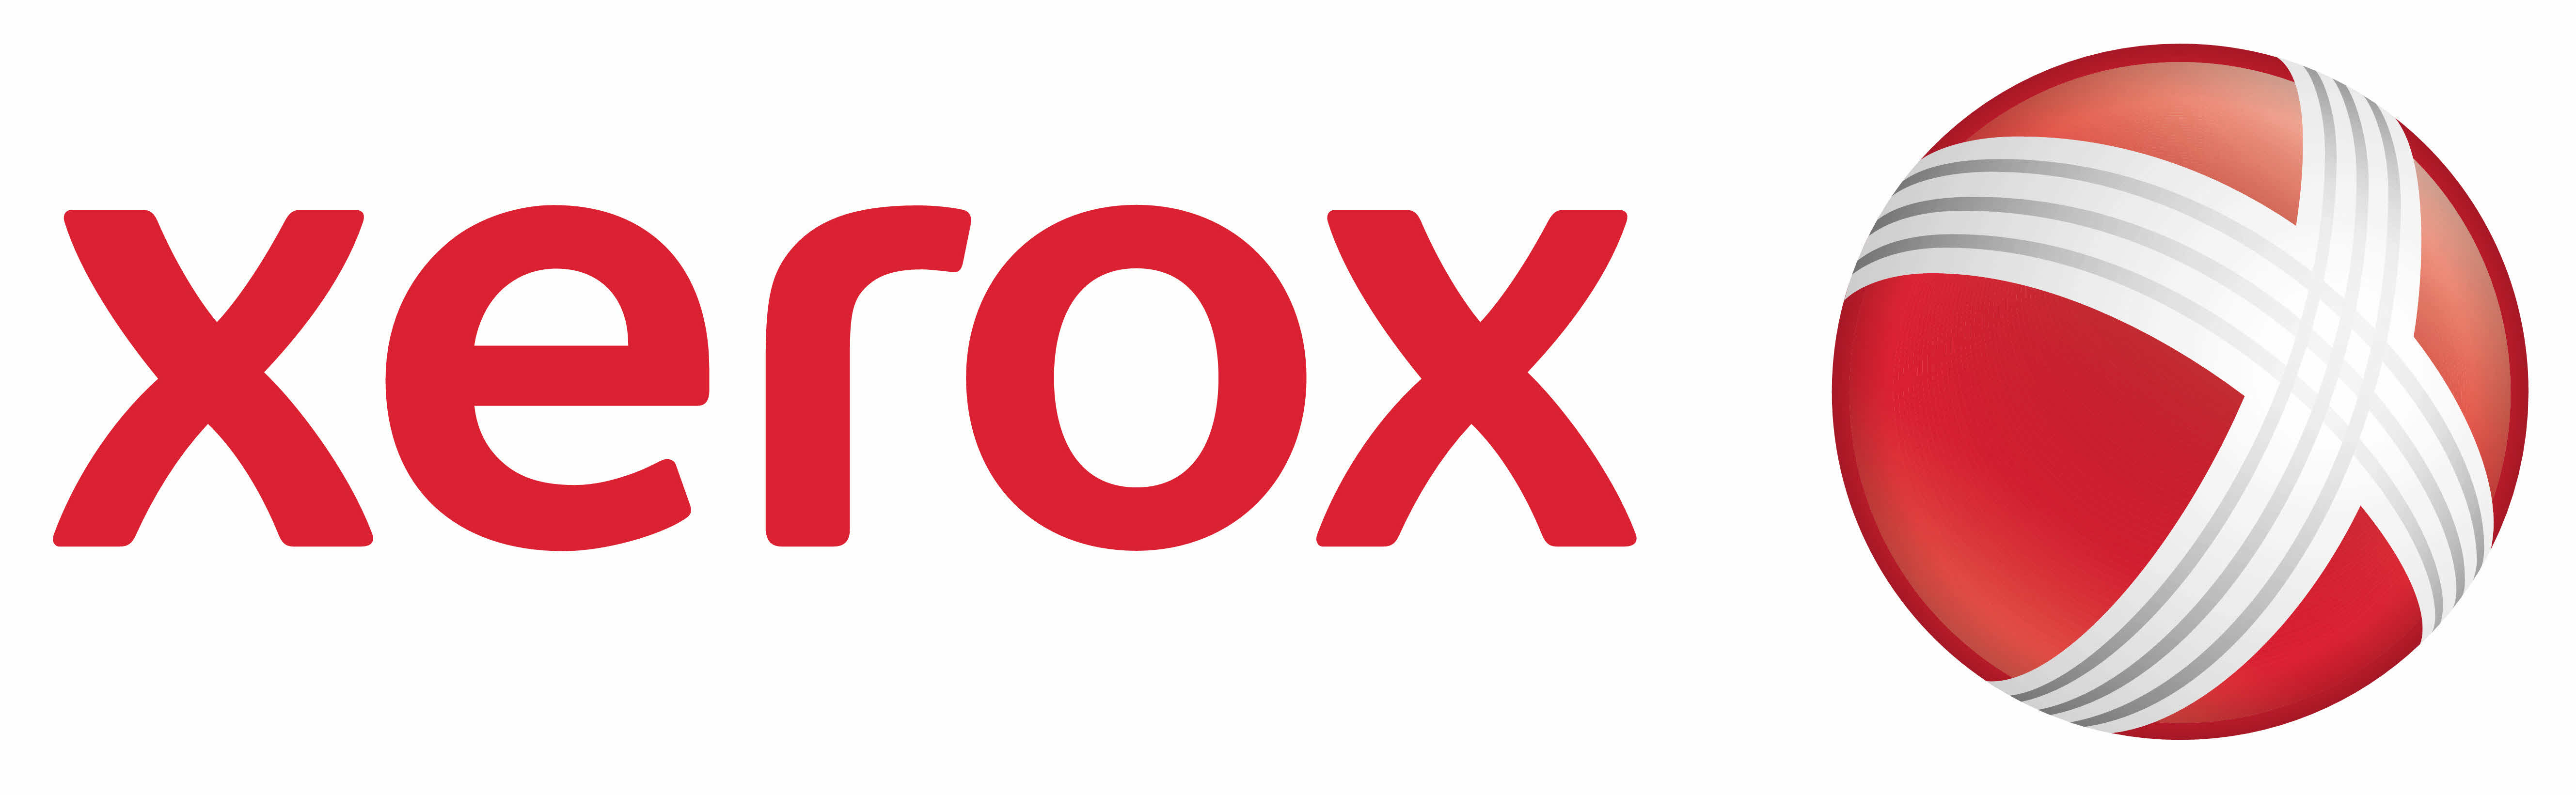 Xerox Brand Logo